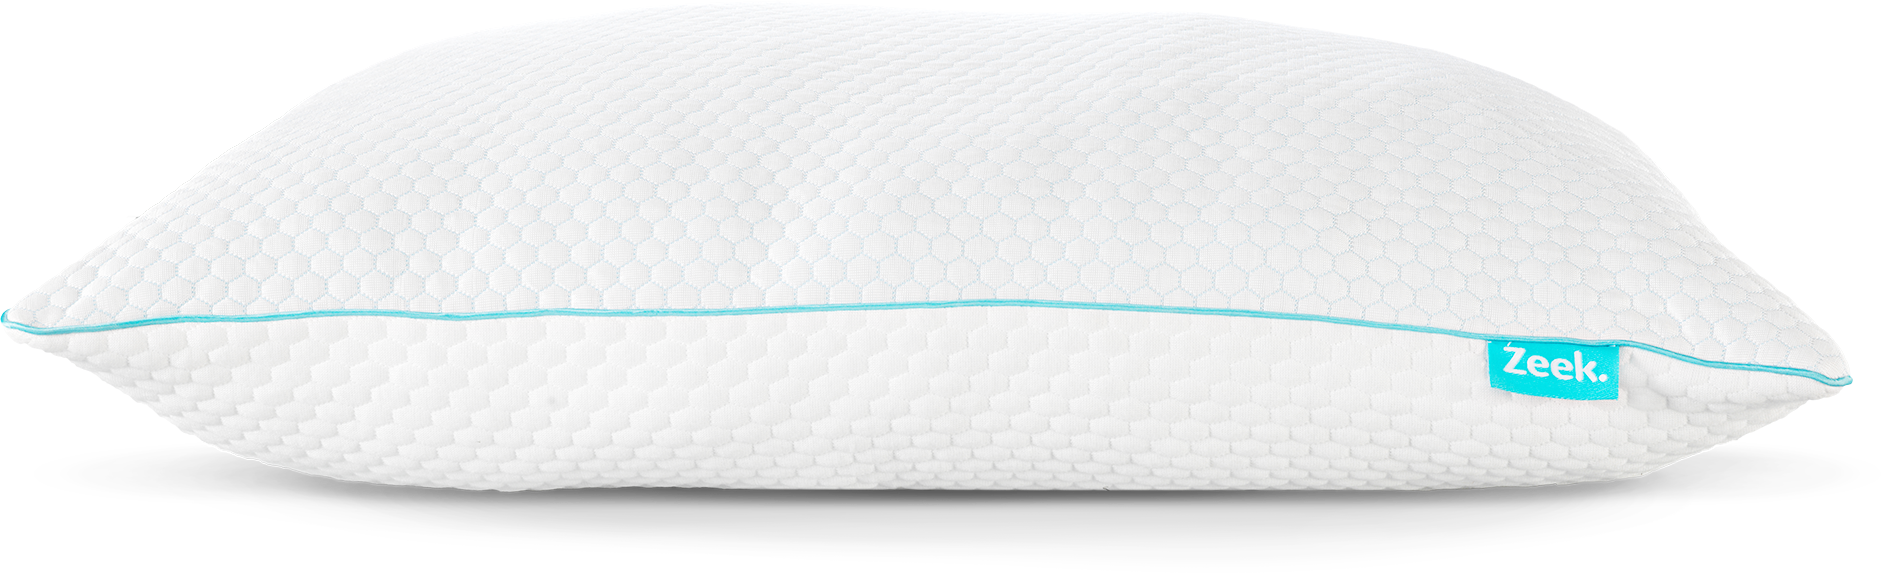 Image of the Zeek Ice Pillow.